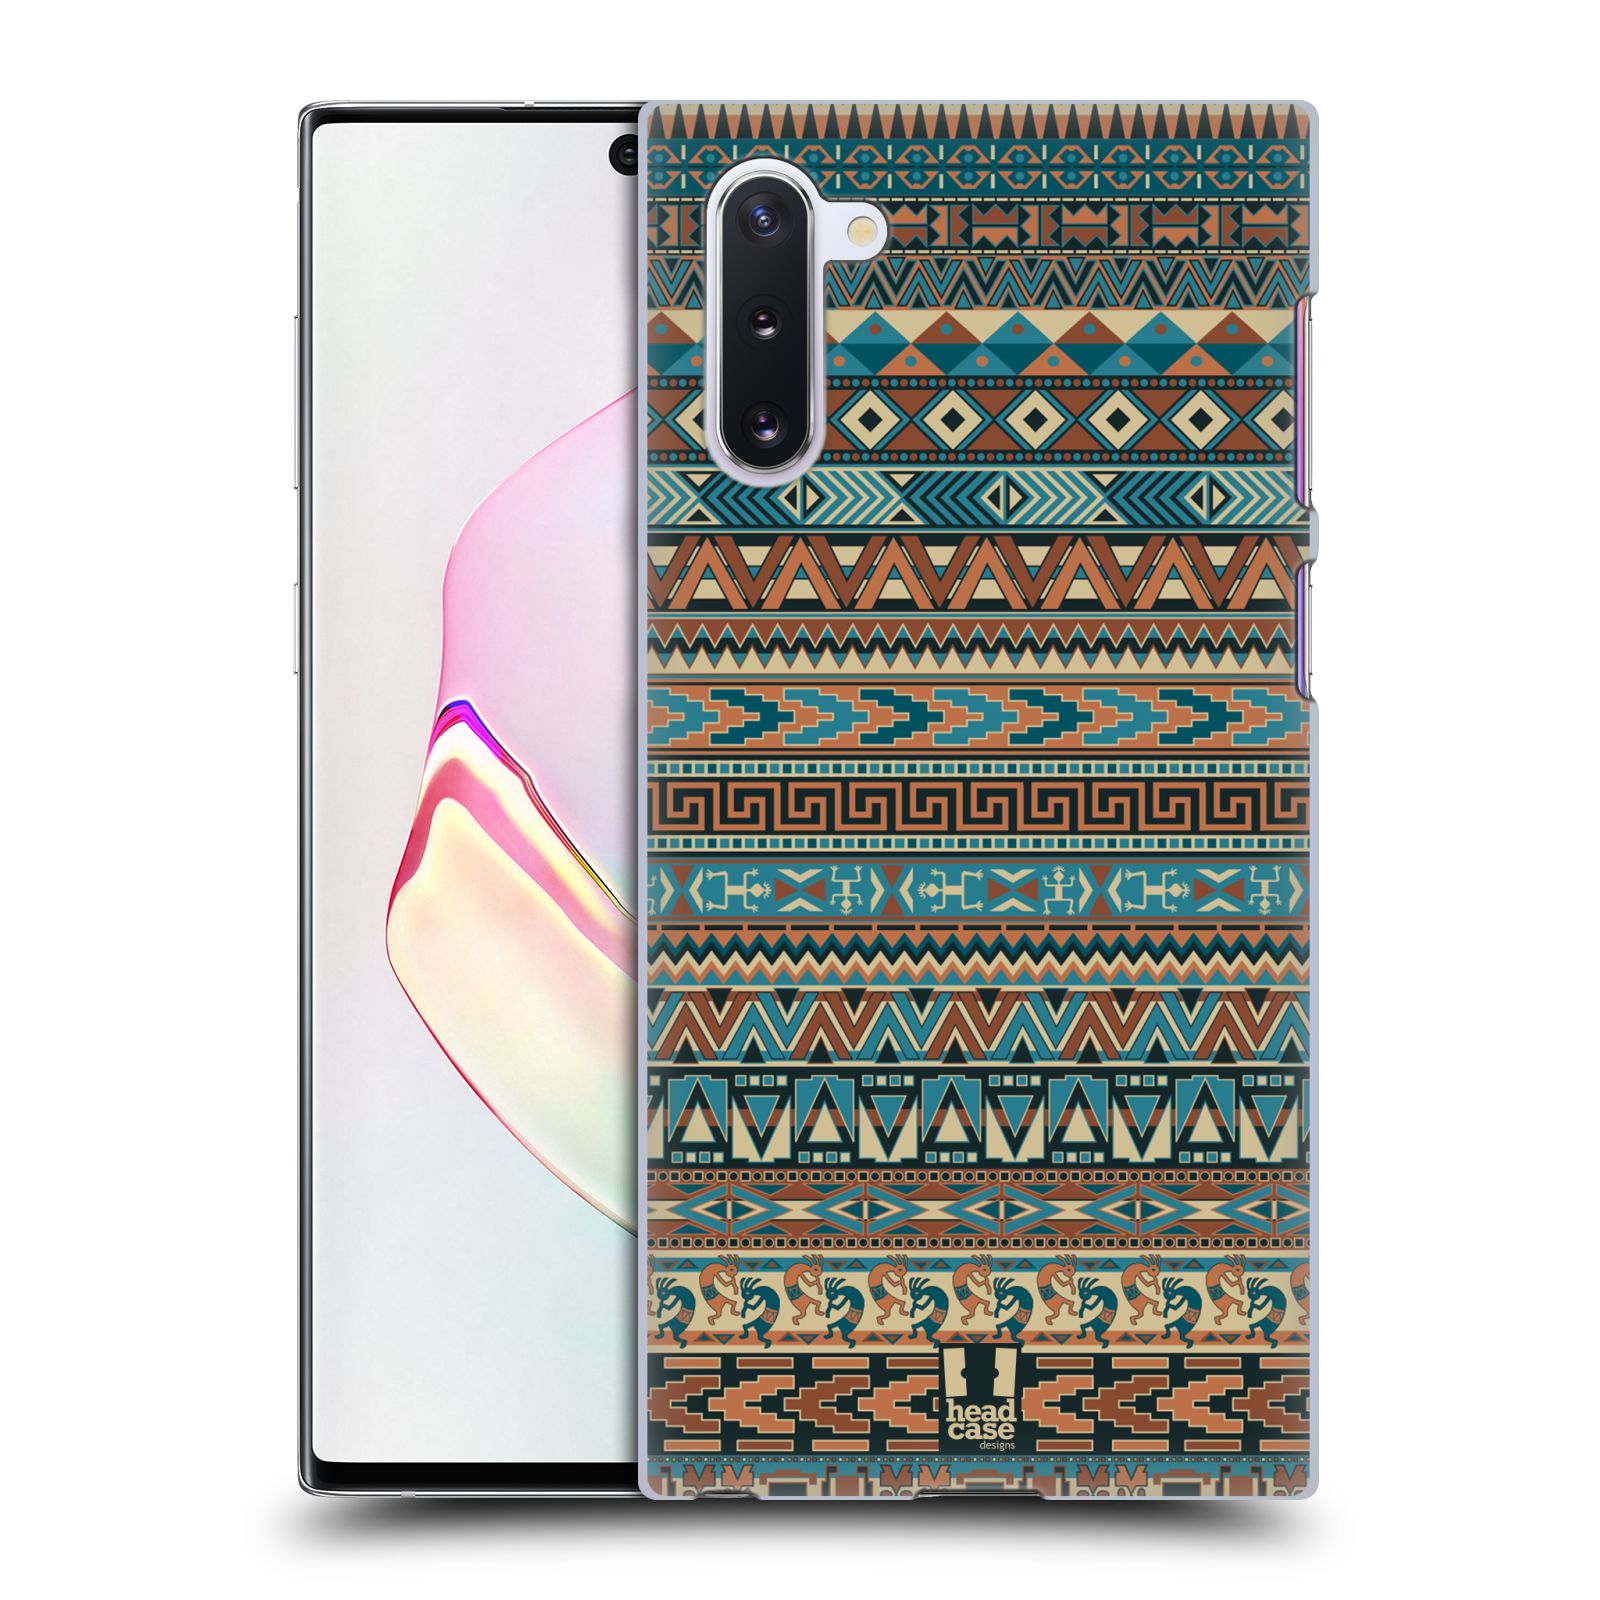 Pouzdro na mobil Samsung Galaxy Note 10 - HEAD CASE - vzor Indiánský vzor MODRÁ